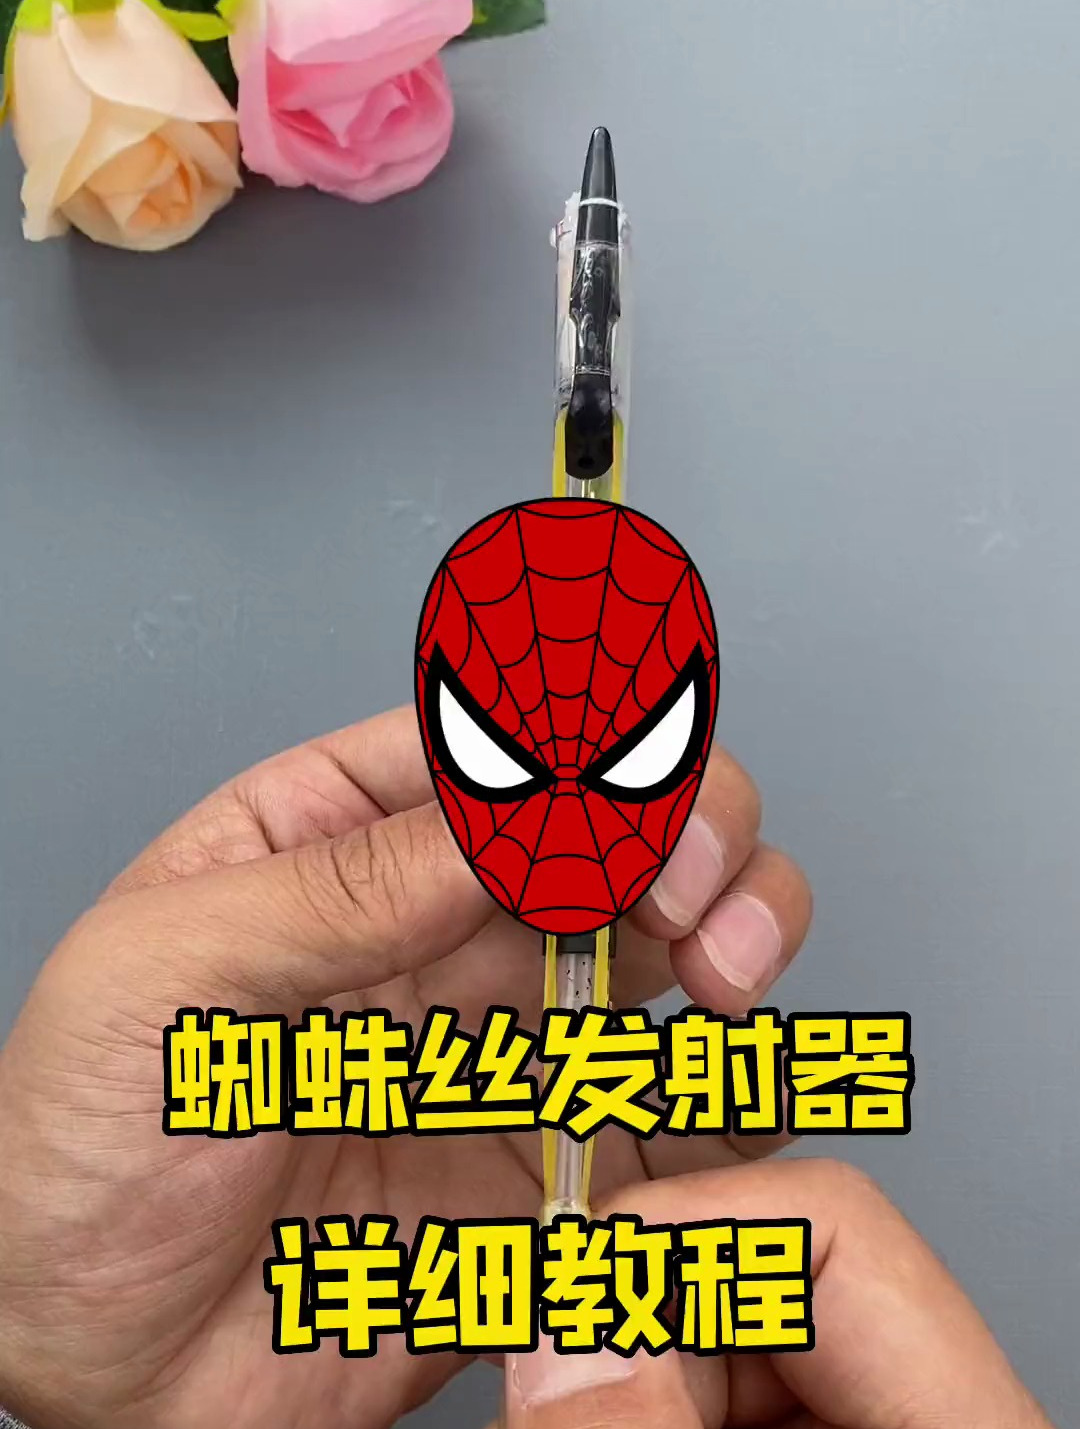 只需要一支中性笔和小磁铁就可以做超好玩的蜘蛛丝发射器,超简单